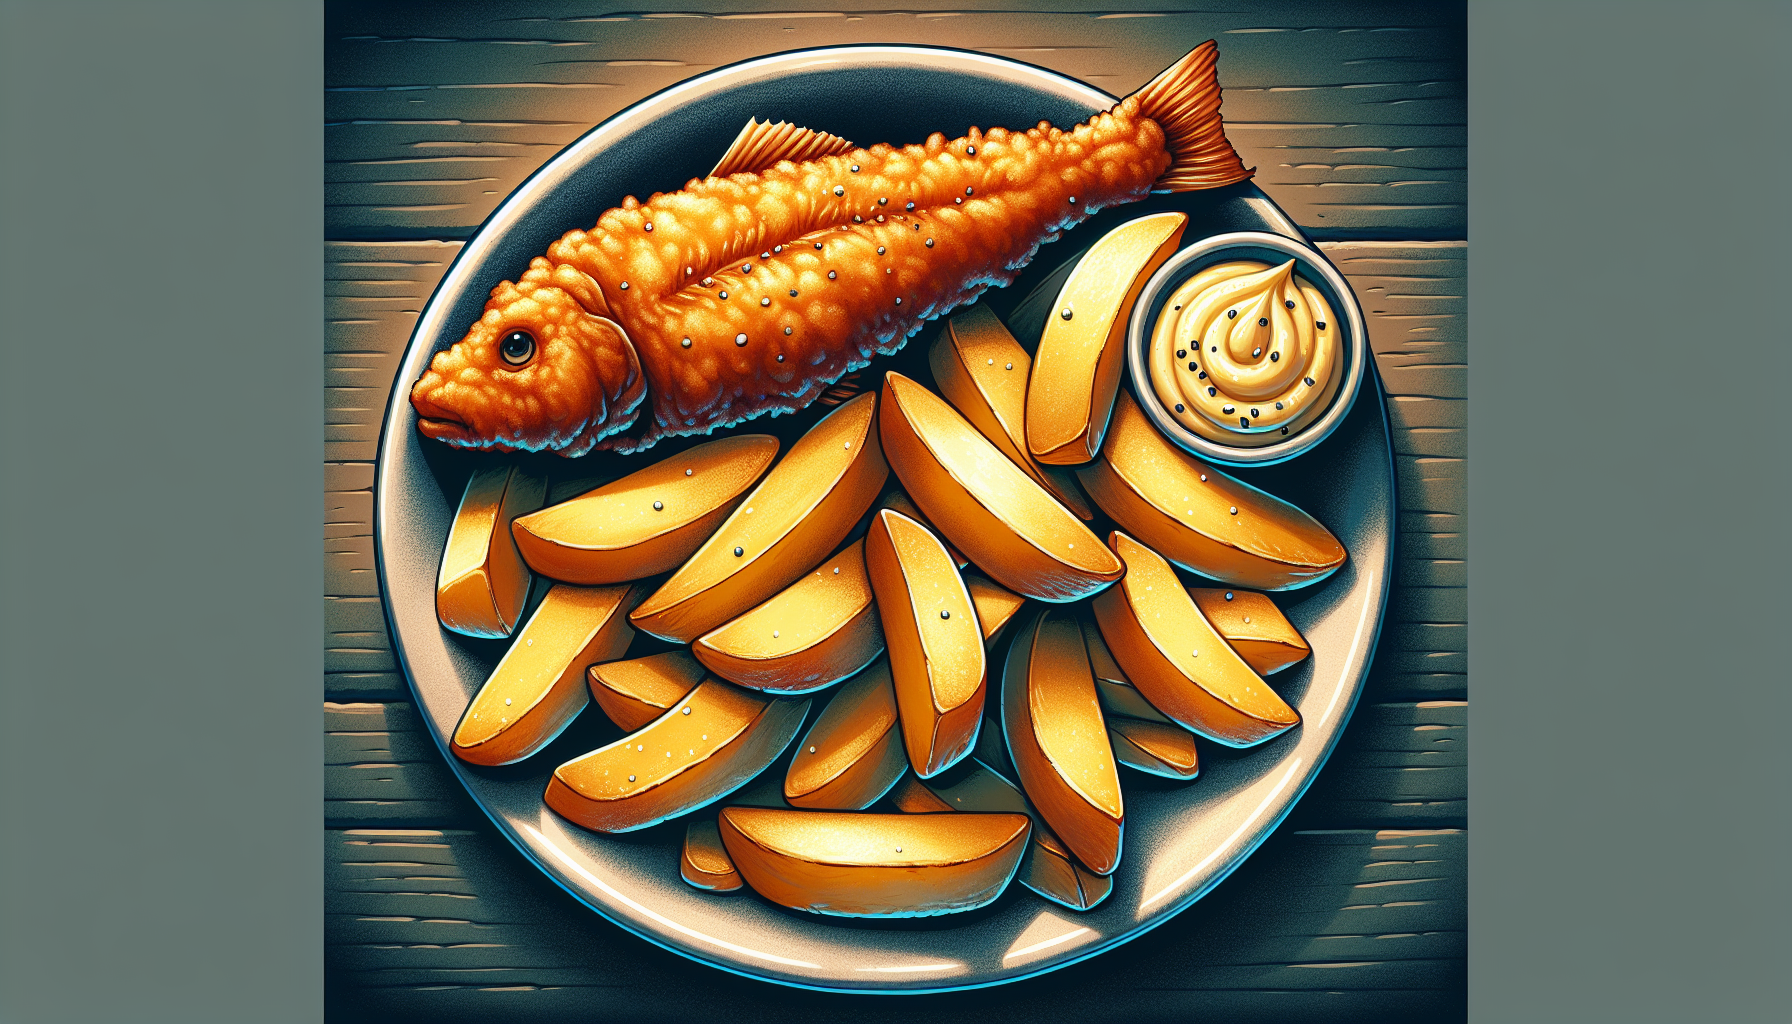 Fish and Chips: Một trong những món ăn truyền thống của nước Anh, bao gồm cá chiên giòn và khoai tây chiên.